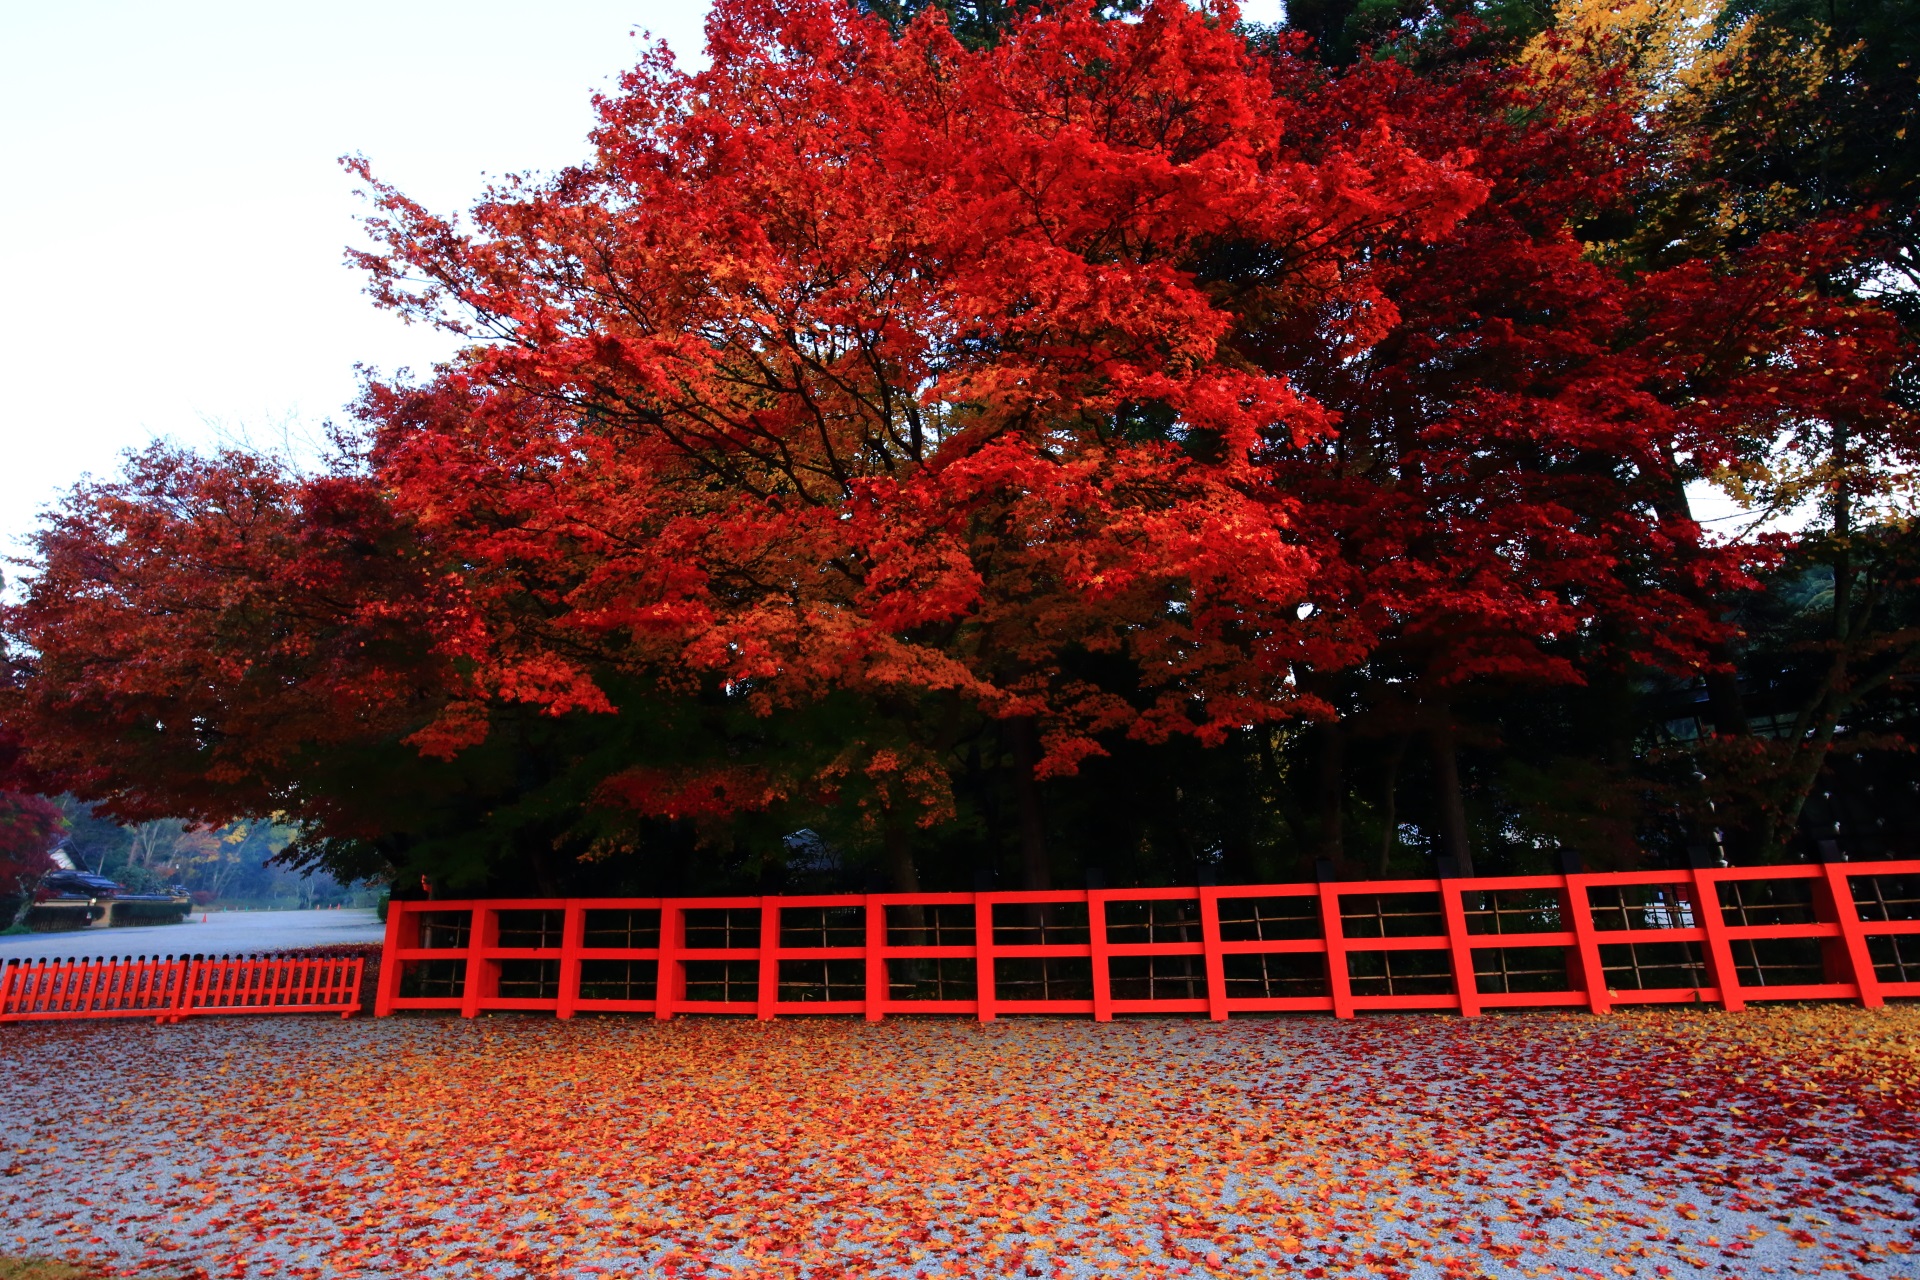 上賀茂神社の夜明けの薄暗い境内で煌くような紅葉